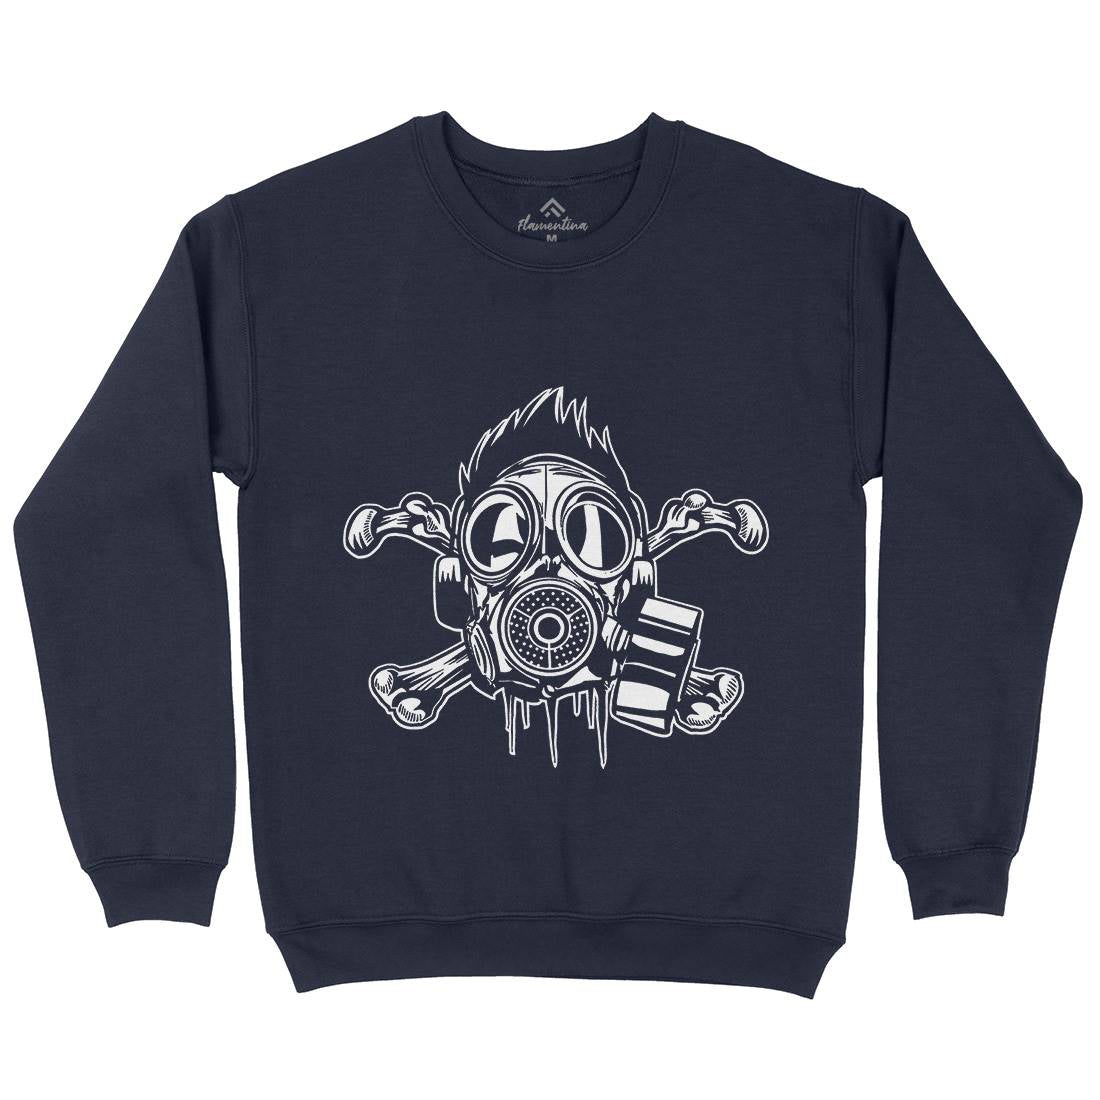 Cross Bones Kids Crew Neck Sweatshirt Horror A518